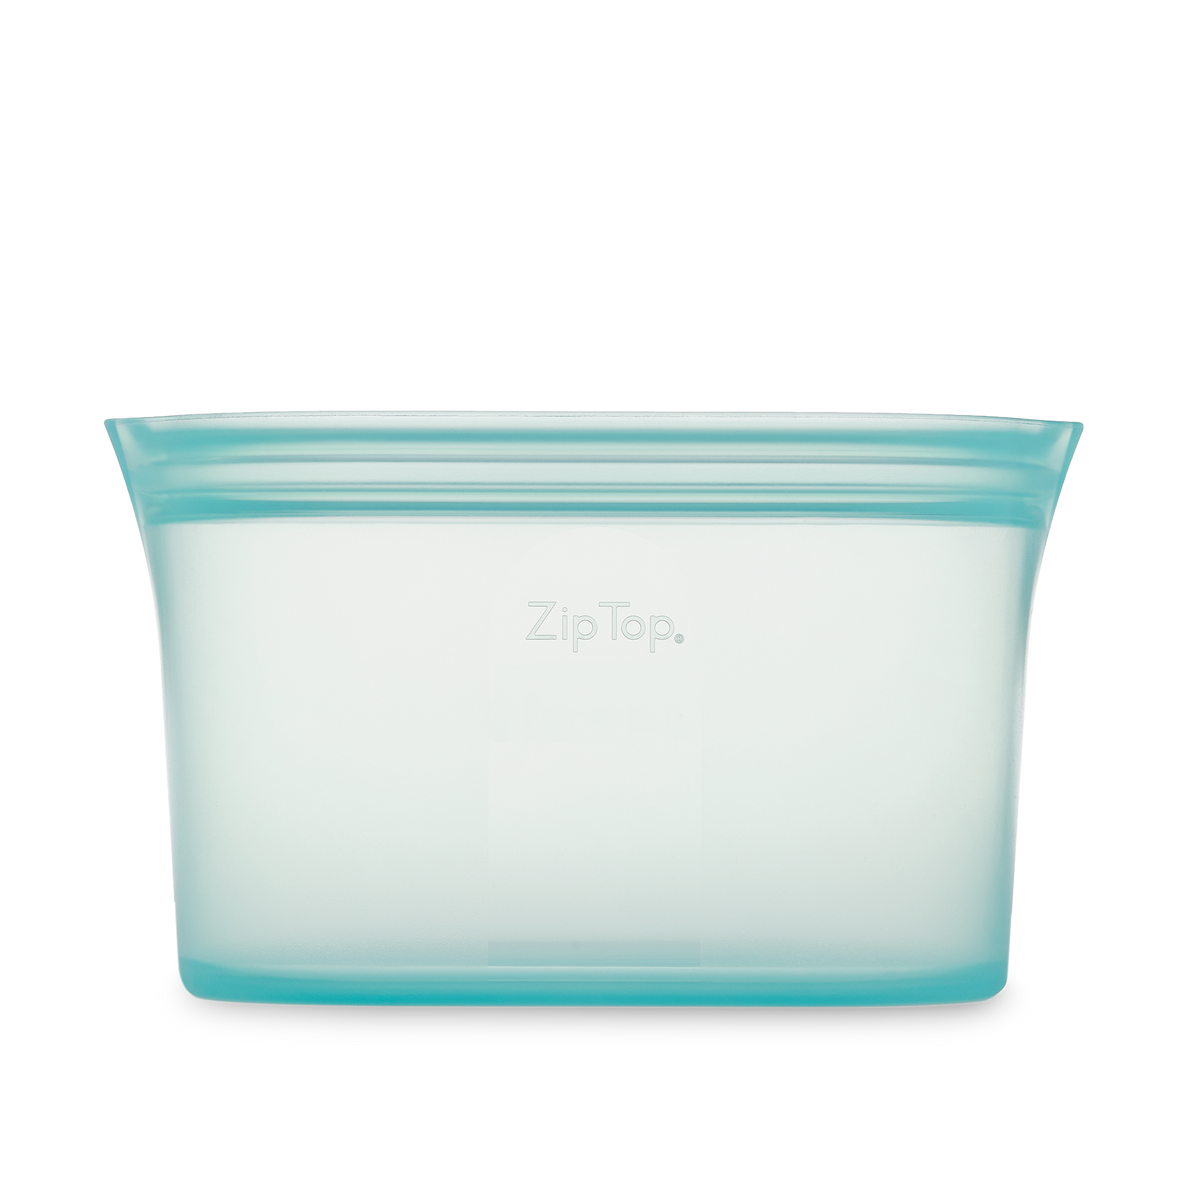 Zip Top - Large Dish Teal